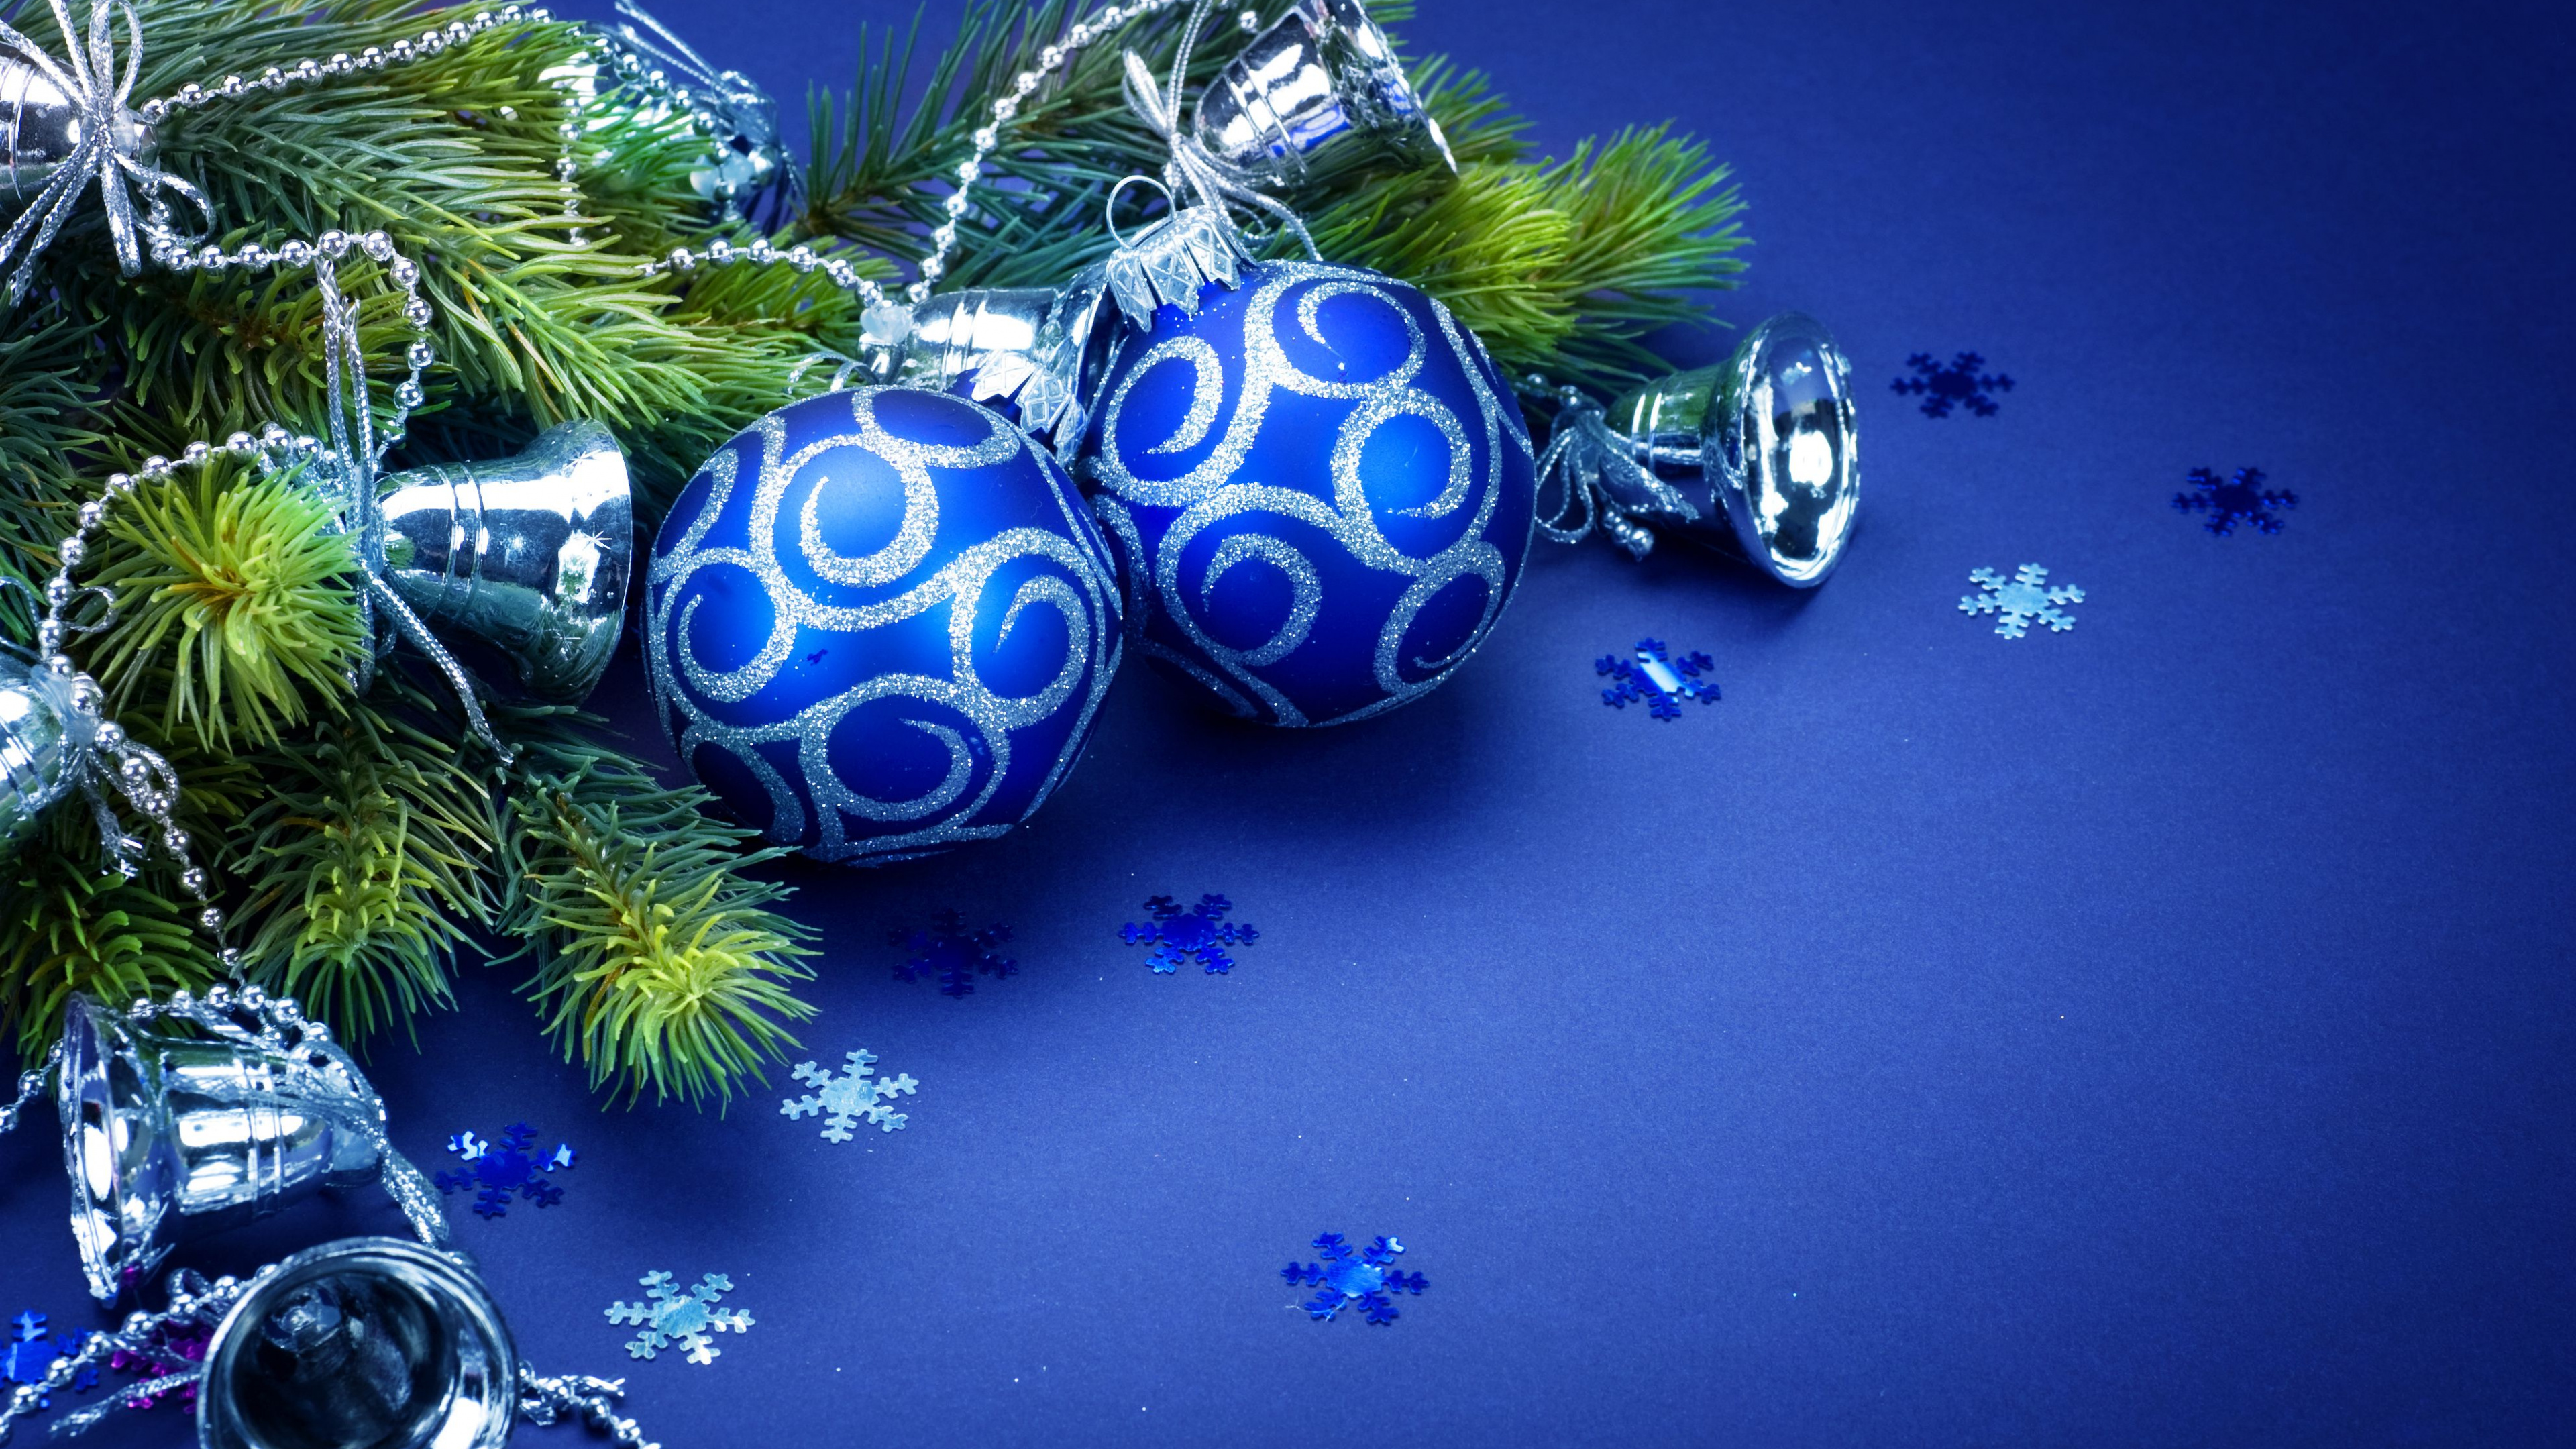 Weihnachten, Christmas Ornament, Blau, Weihnachtsdekoration, Baum. Wallpaper in 3840x2160 Resolution